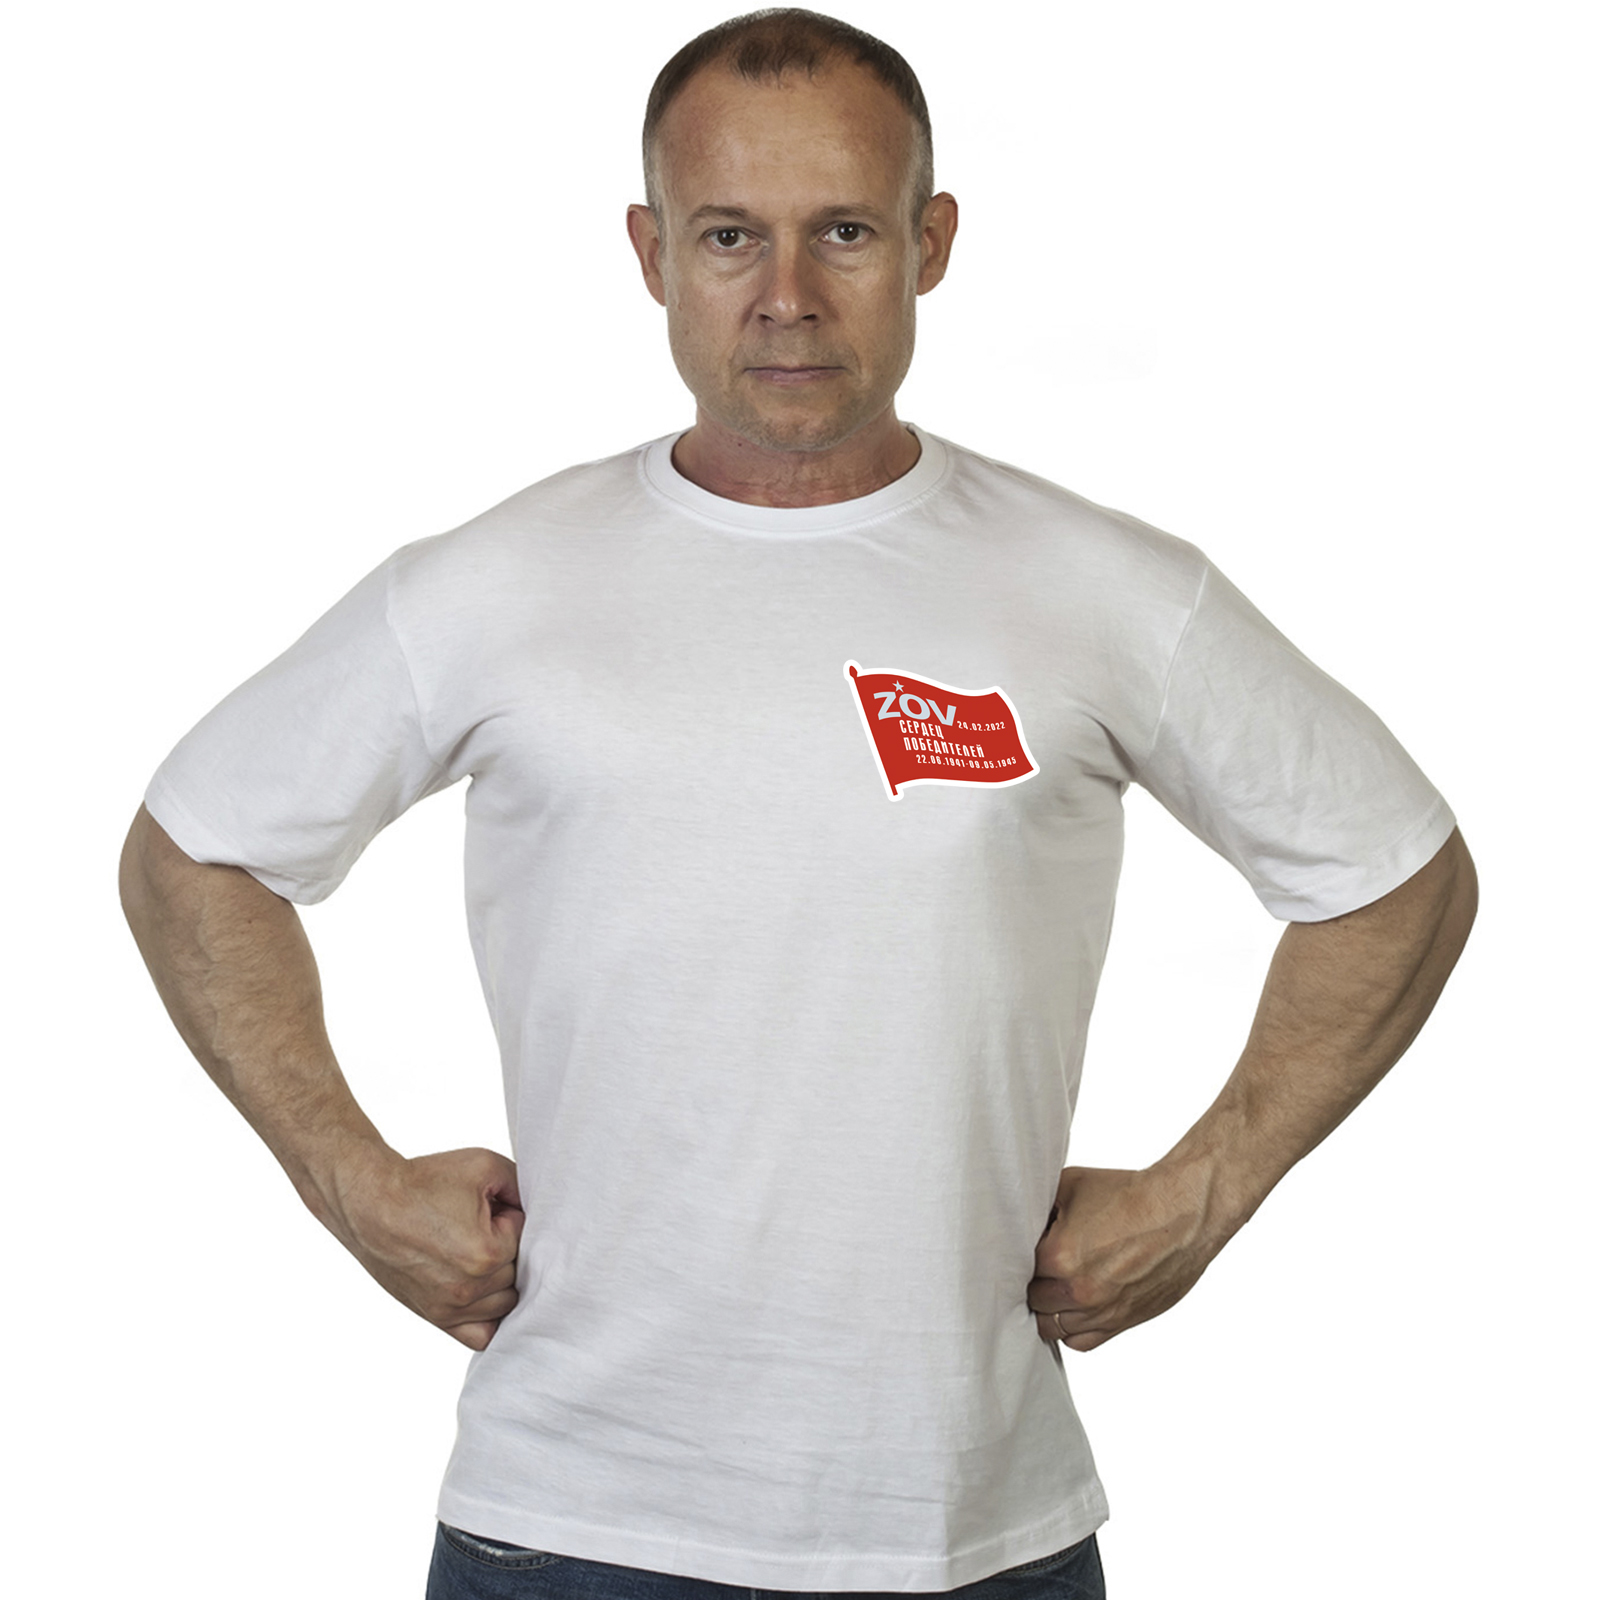 Белая футболка с термотрансфером "ZOV сердец победителей"